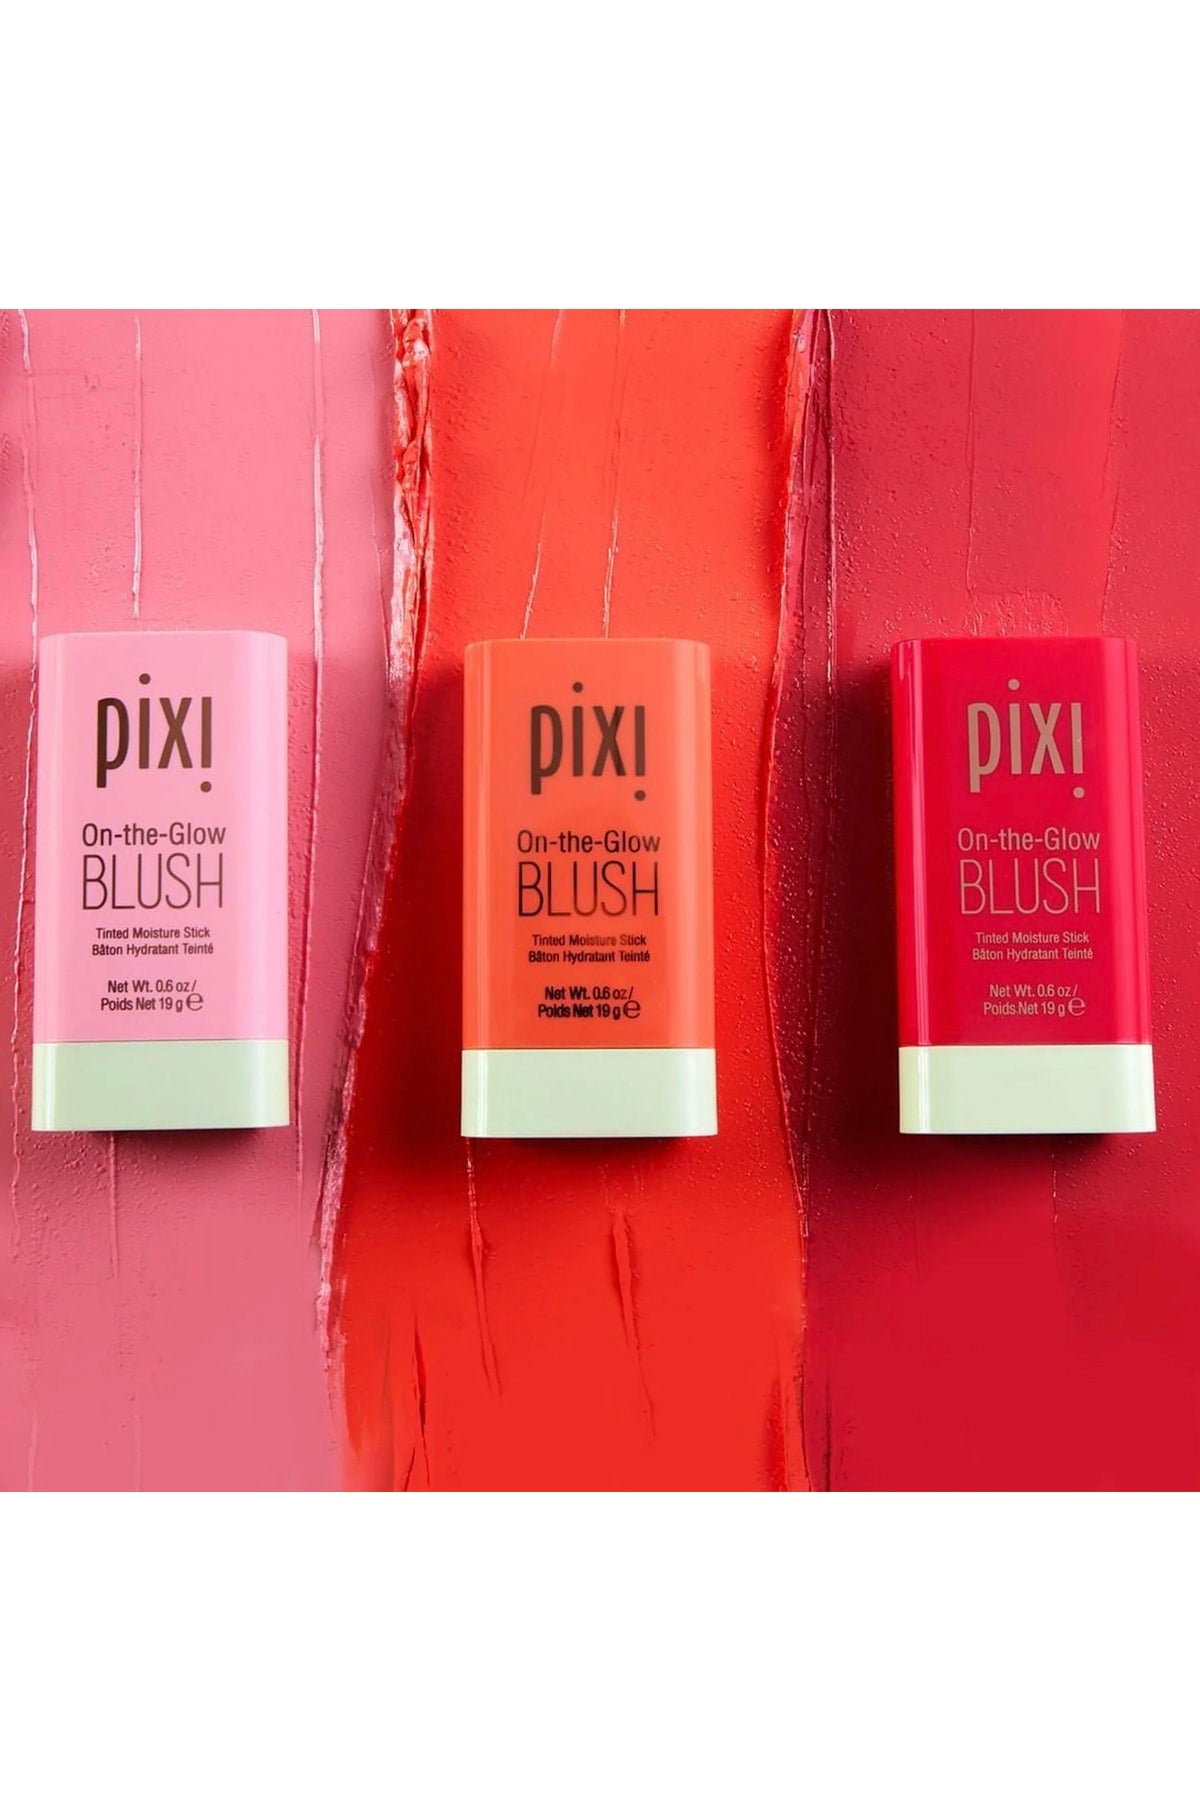 PIXI On-the-Glow Blush